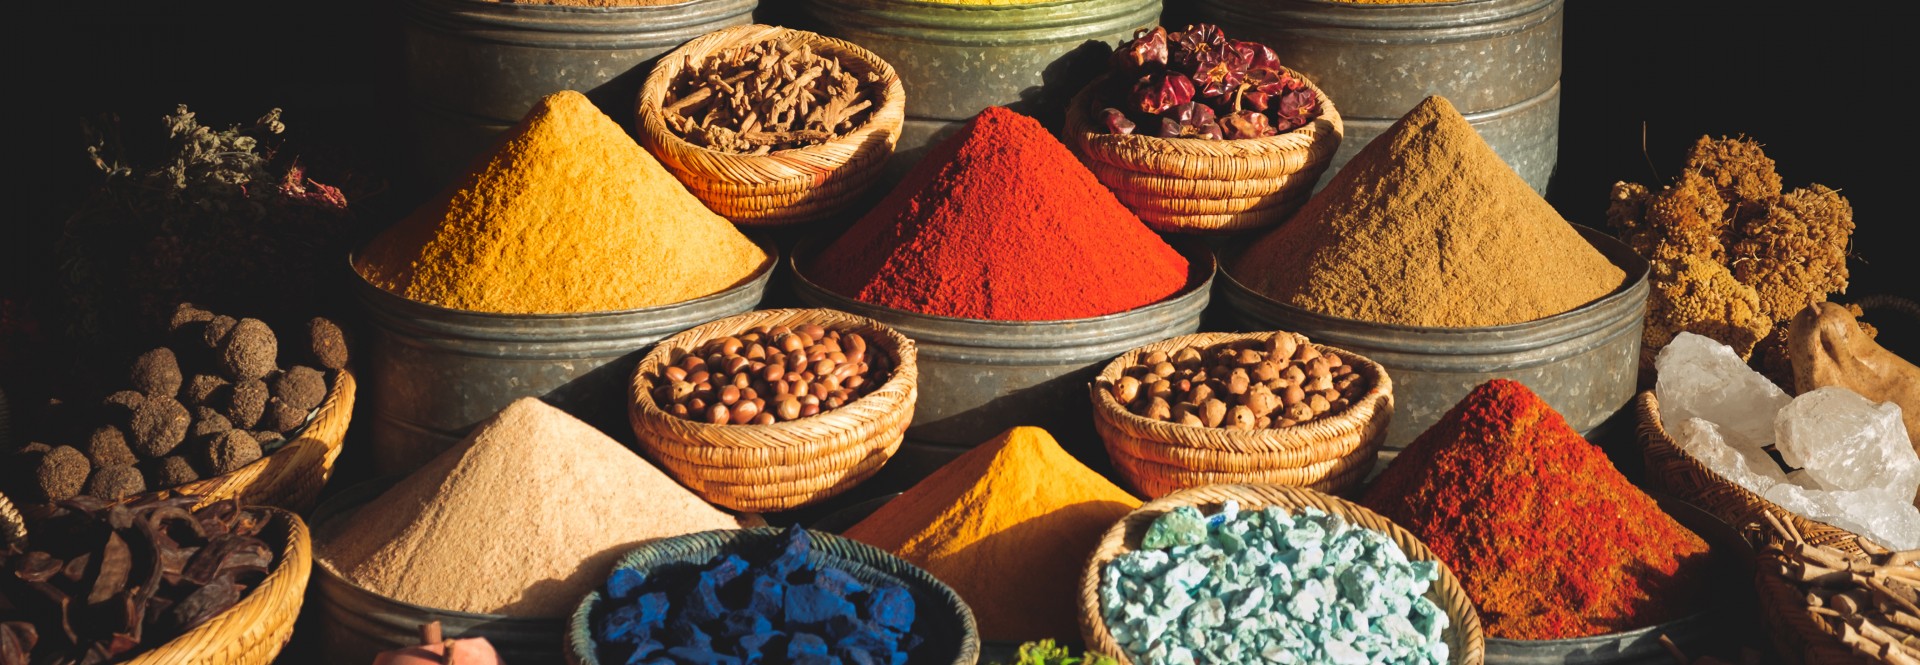 Spices Morocco v2